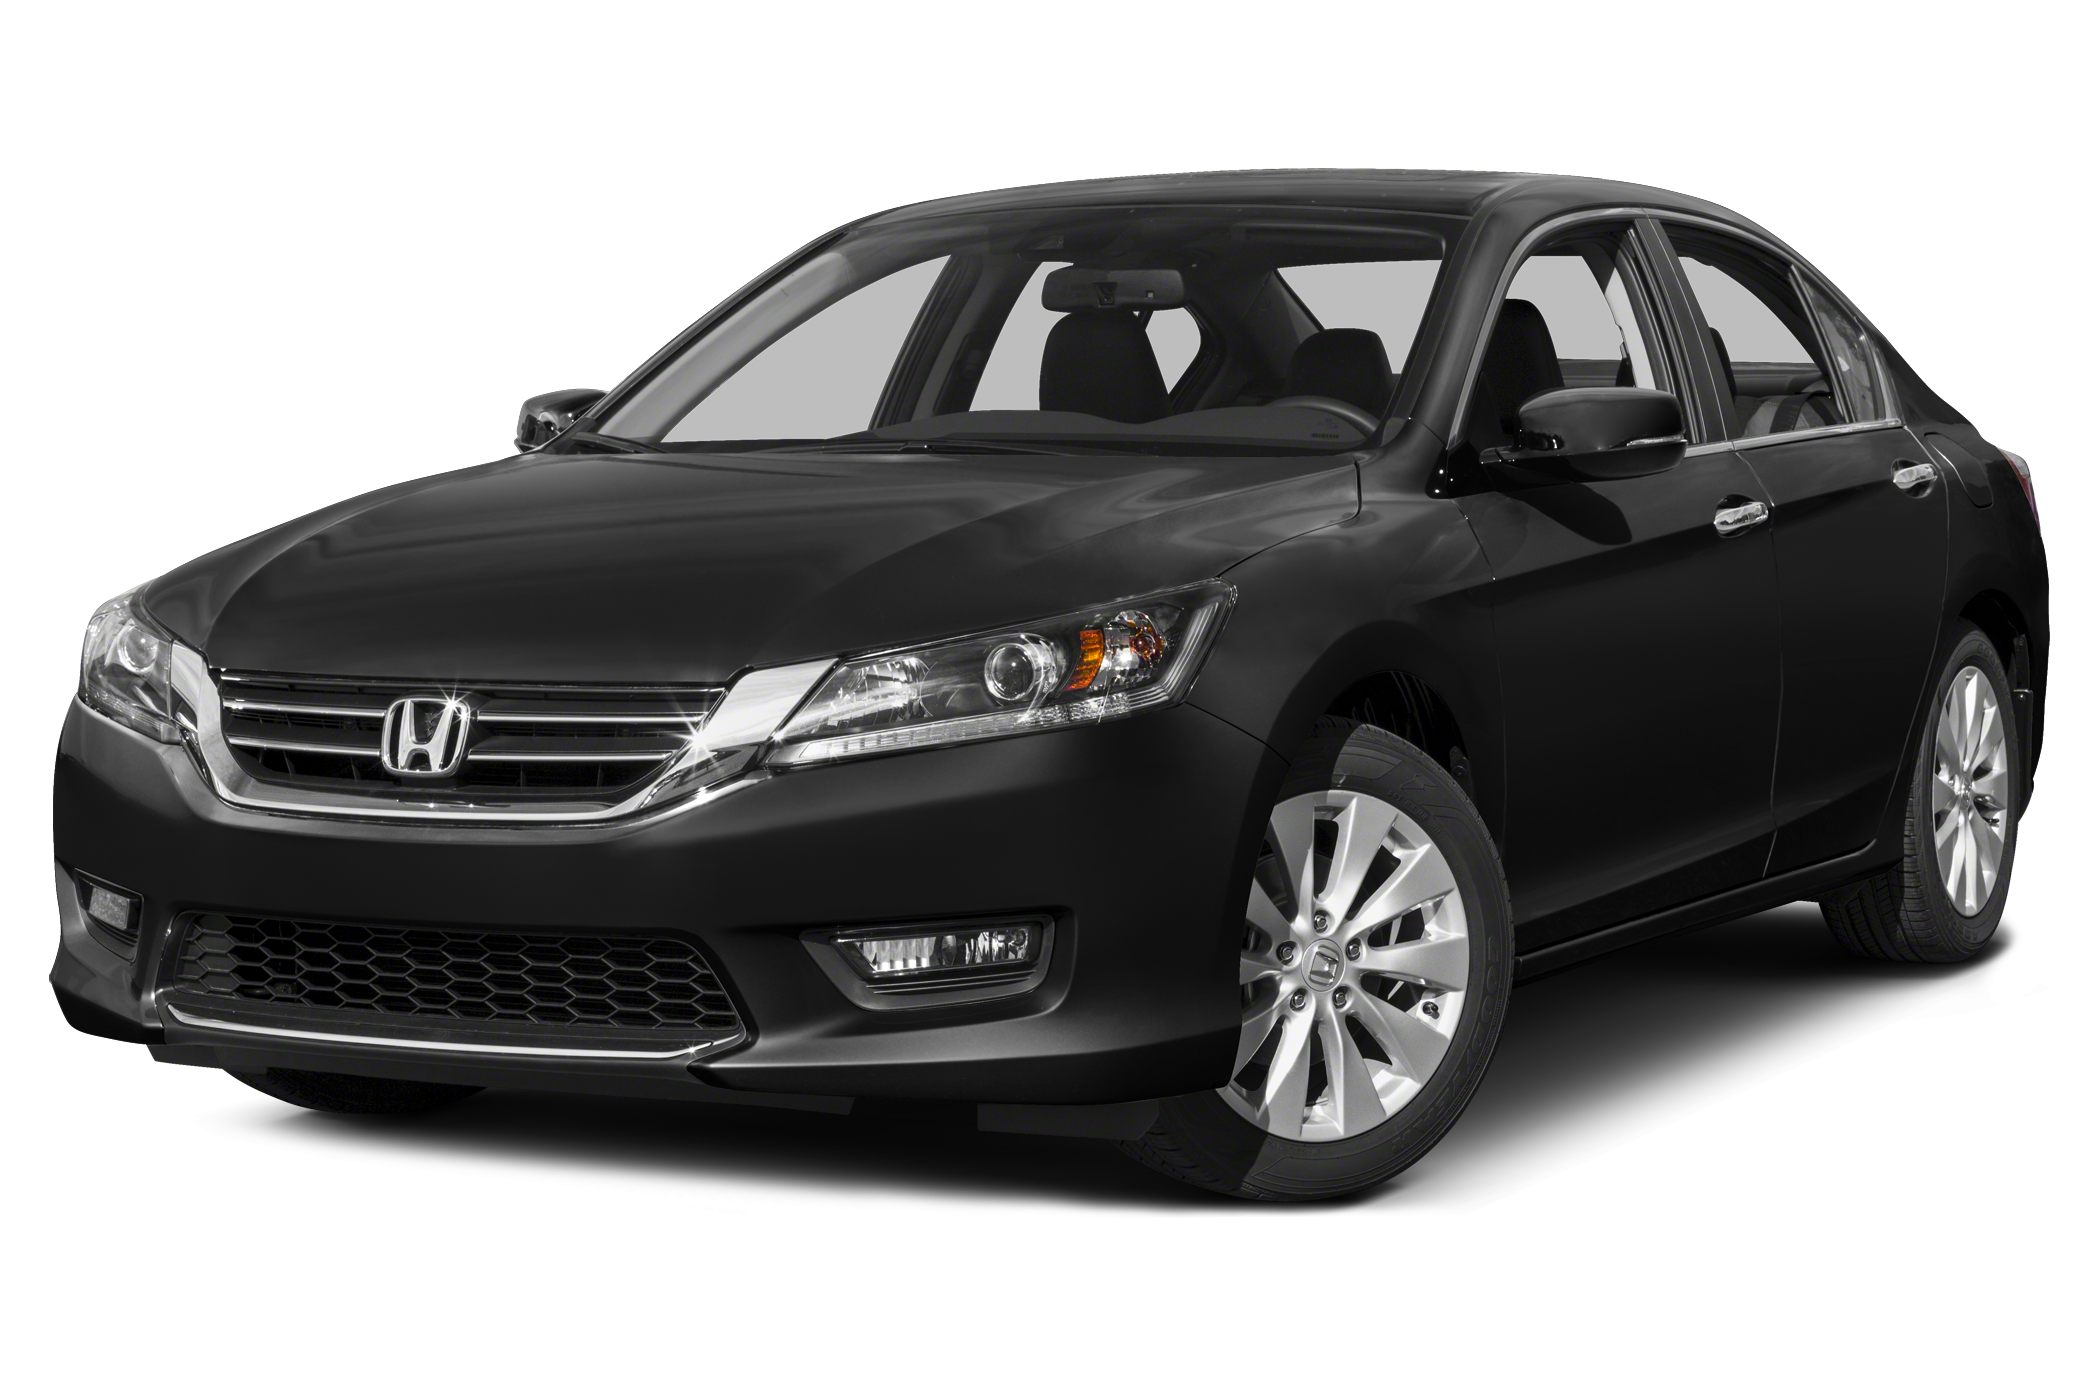 Great Deals on a new 2015 Honda Accord EX-L V-6 4dr Sedan at The ...